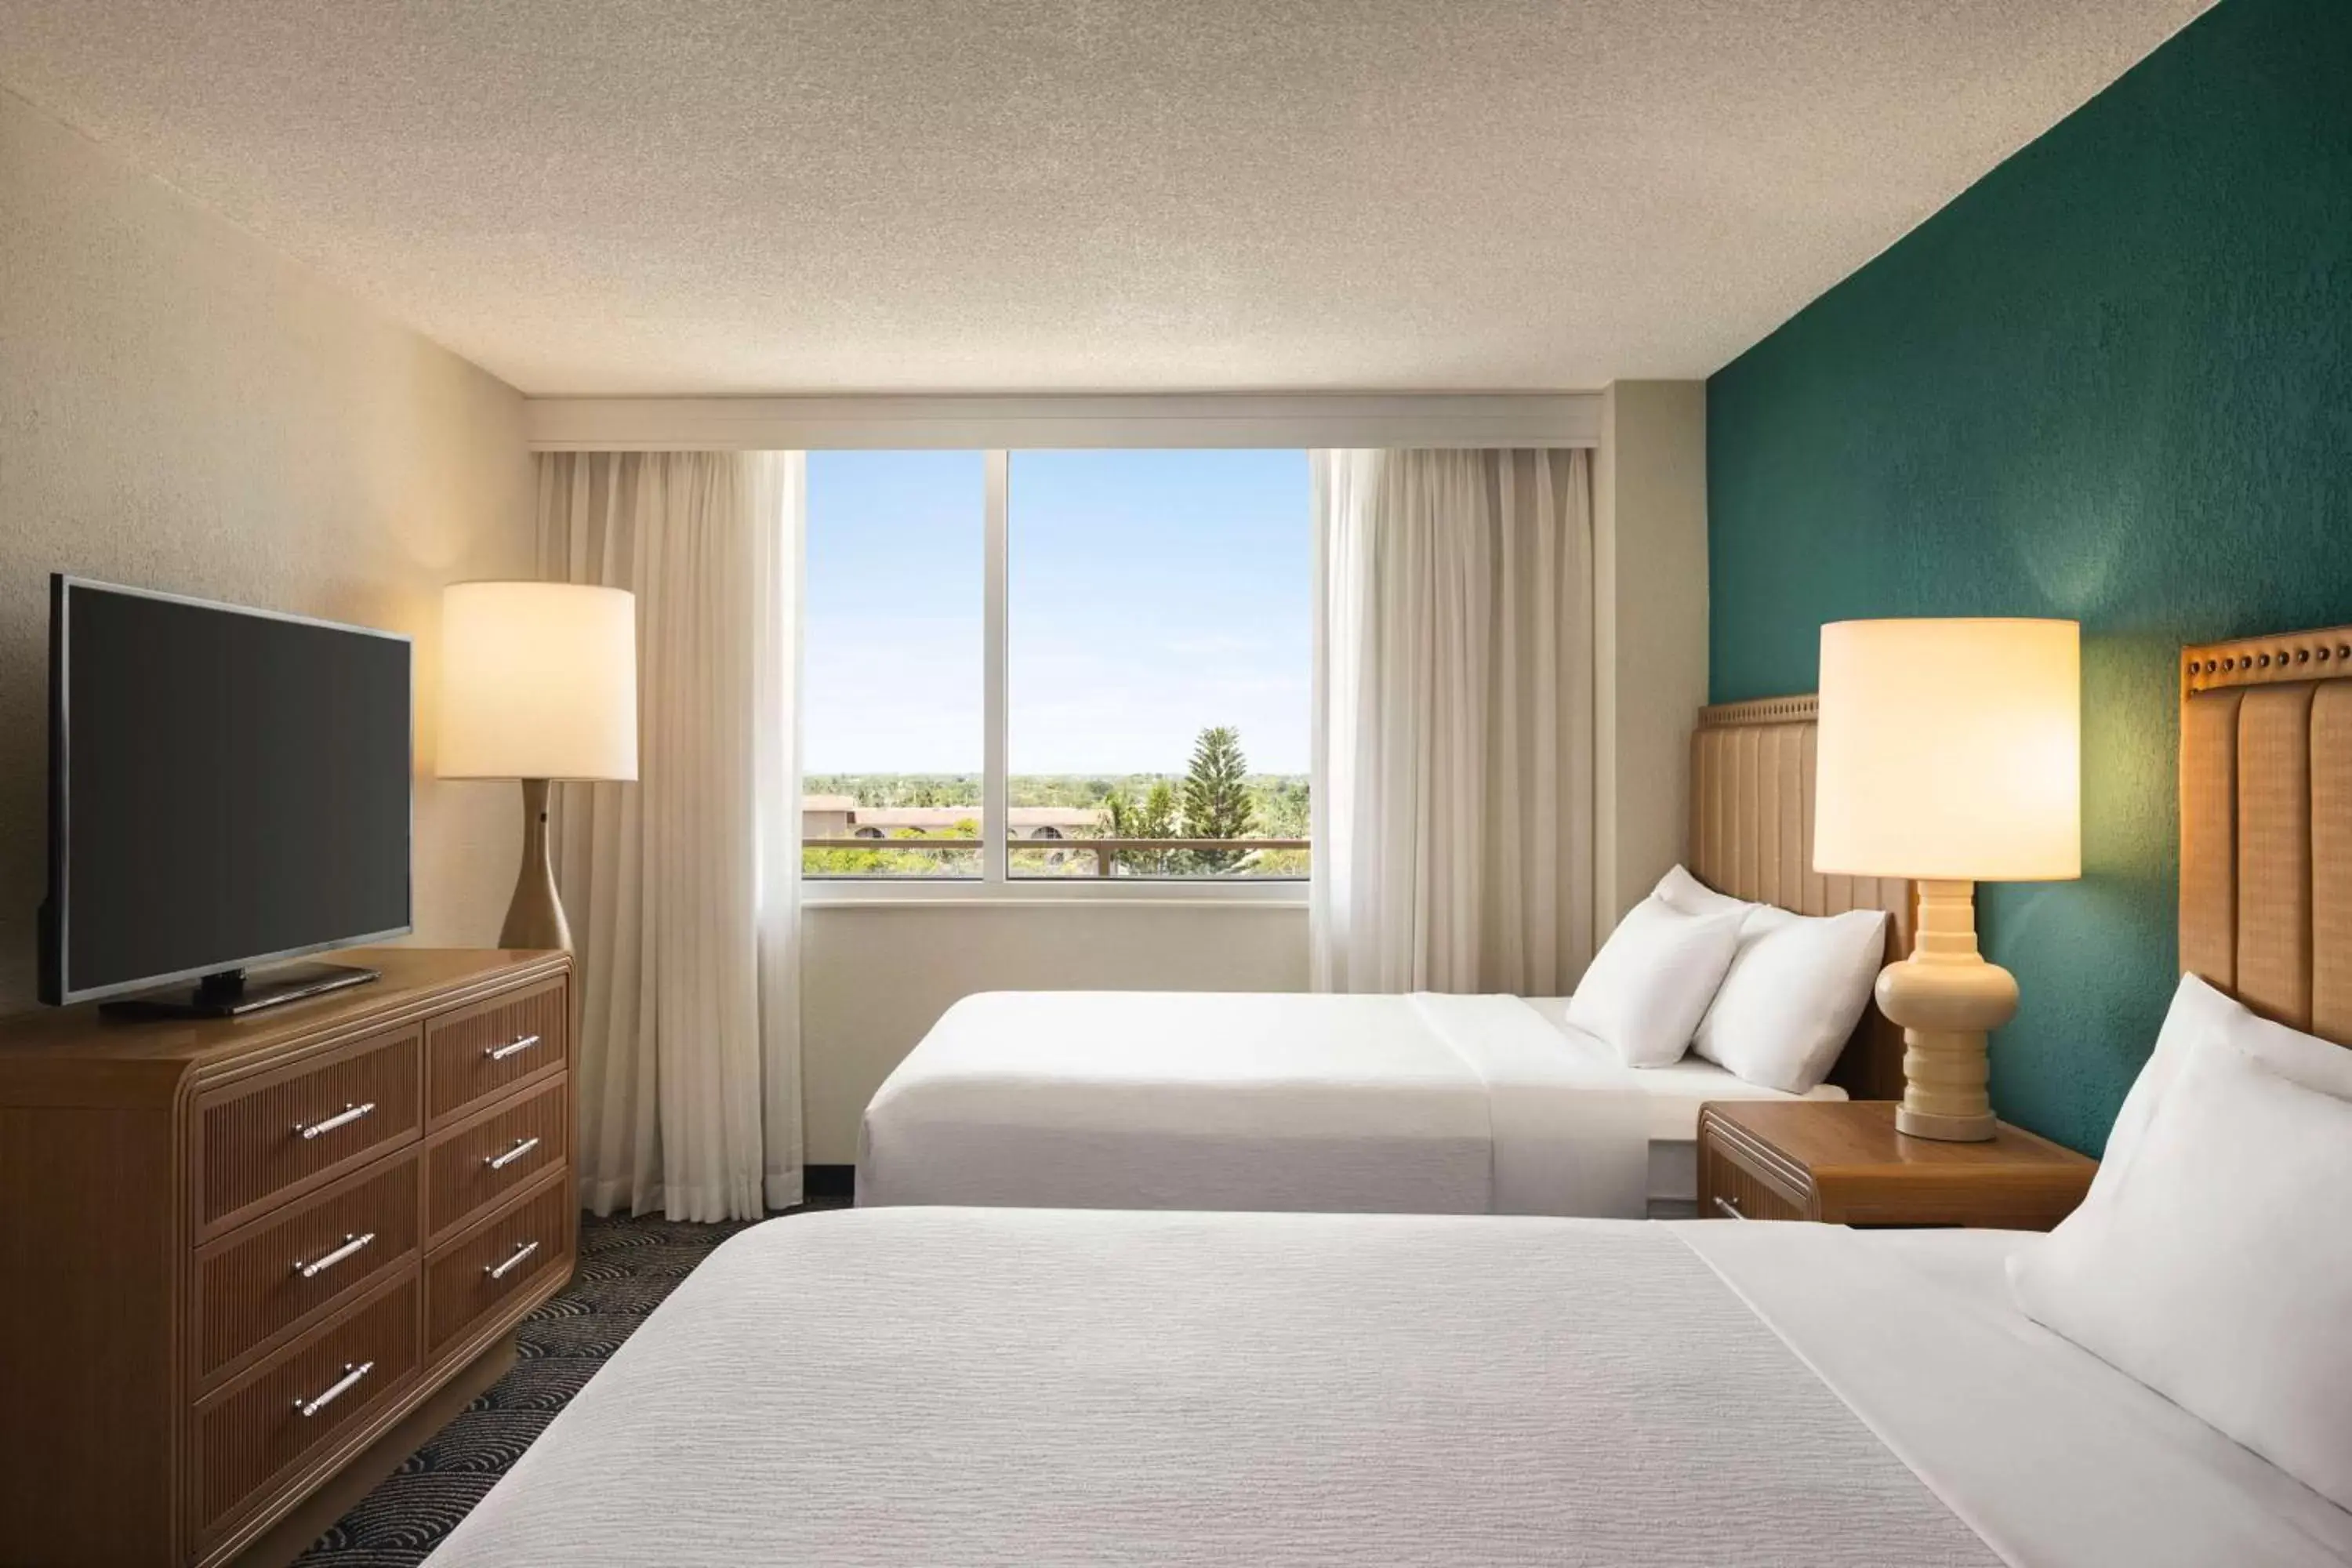 Suite, 2 Queen Beds, Sunset View, Juliet Balcony in Embassy Suites by Hilton Deerfield Beach Resort & Spa